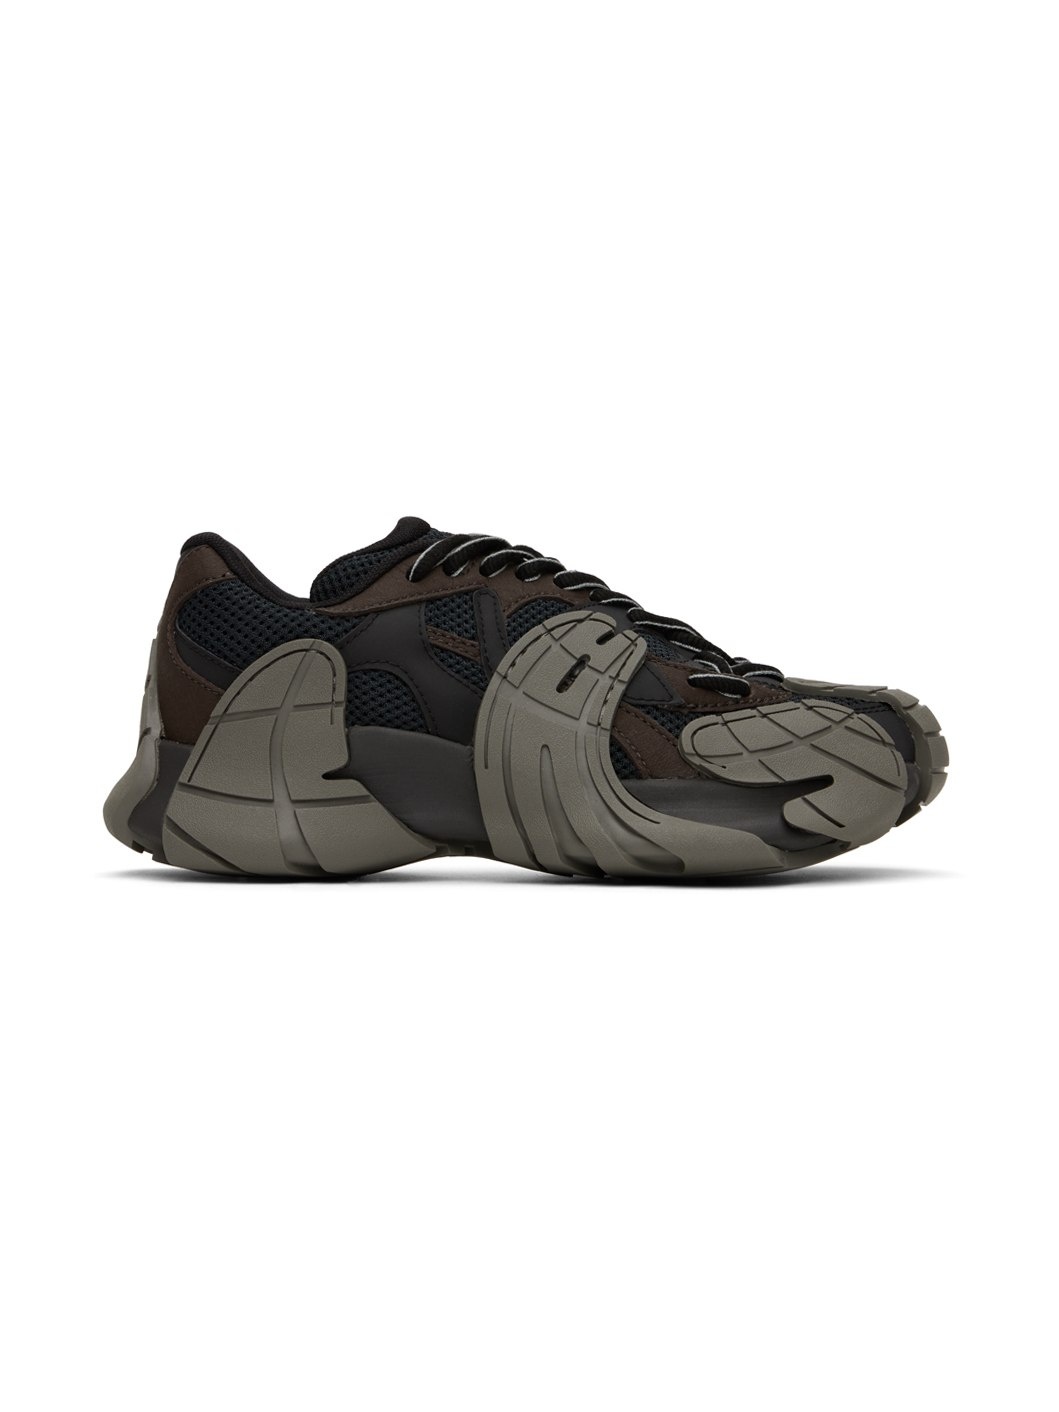 Brown & Gray Tormenta Sneakers - 1